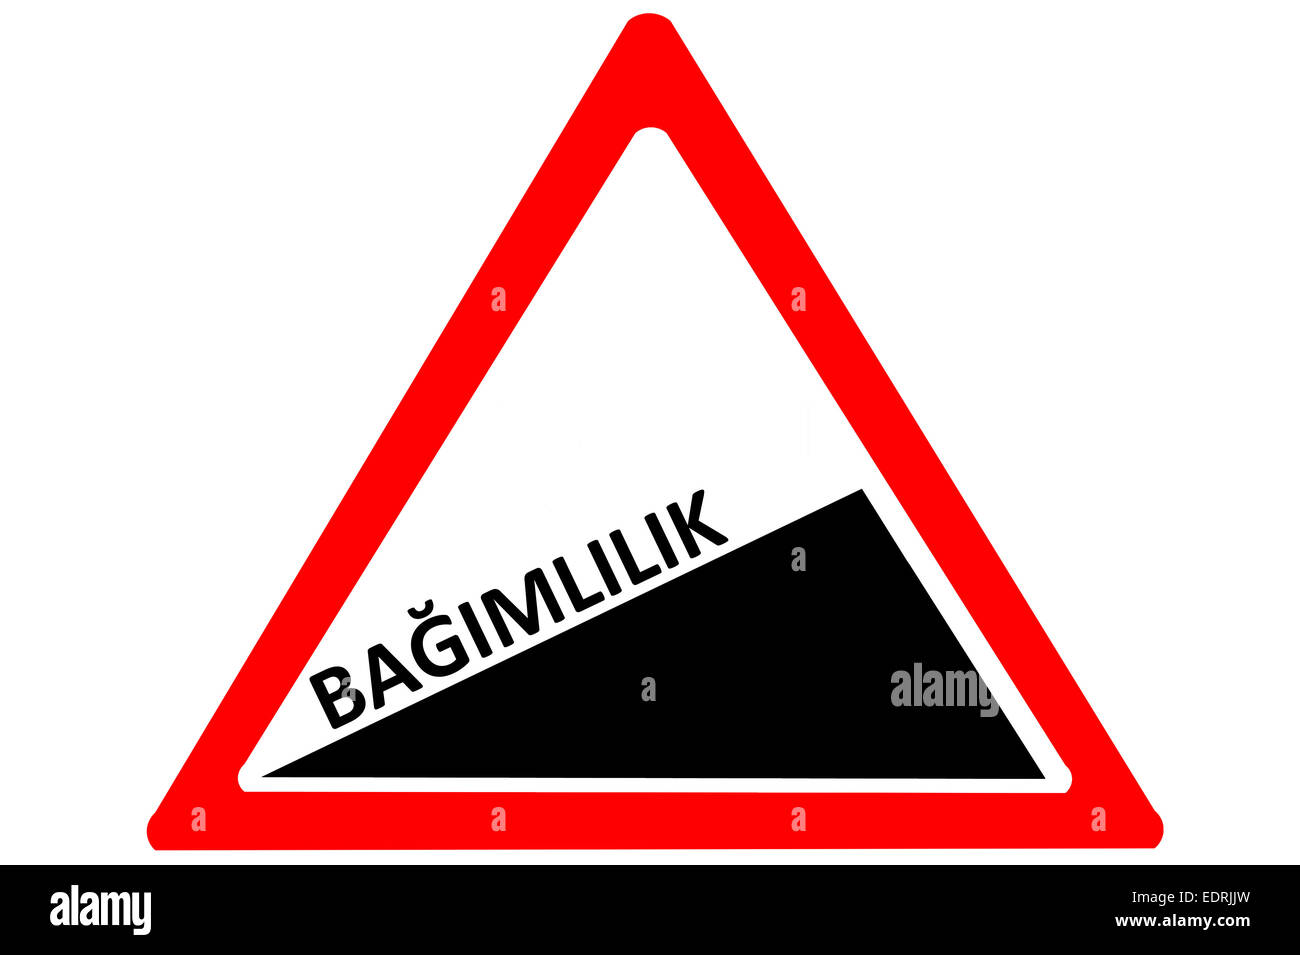 Bagimlilik la dépendance croissante de la route turque avertissement signe isolé sur fond blanc Banque D'Images